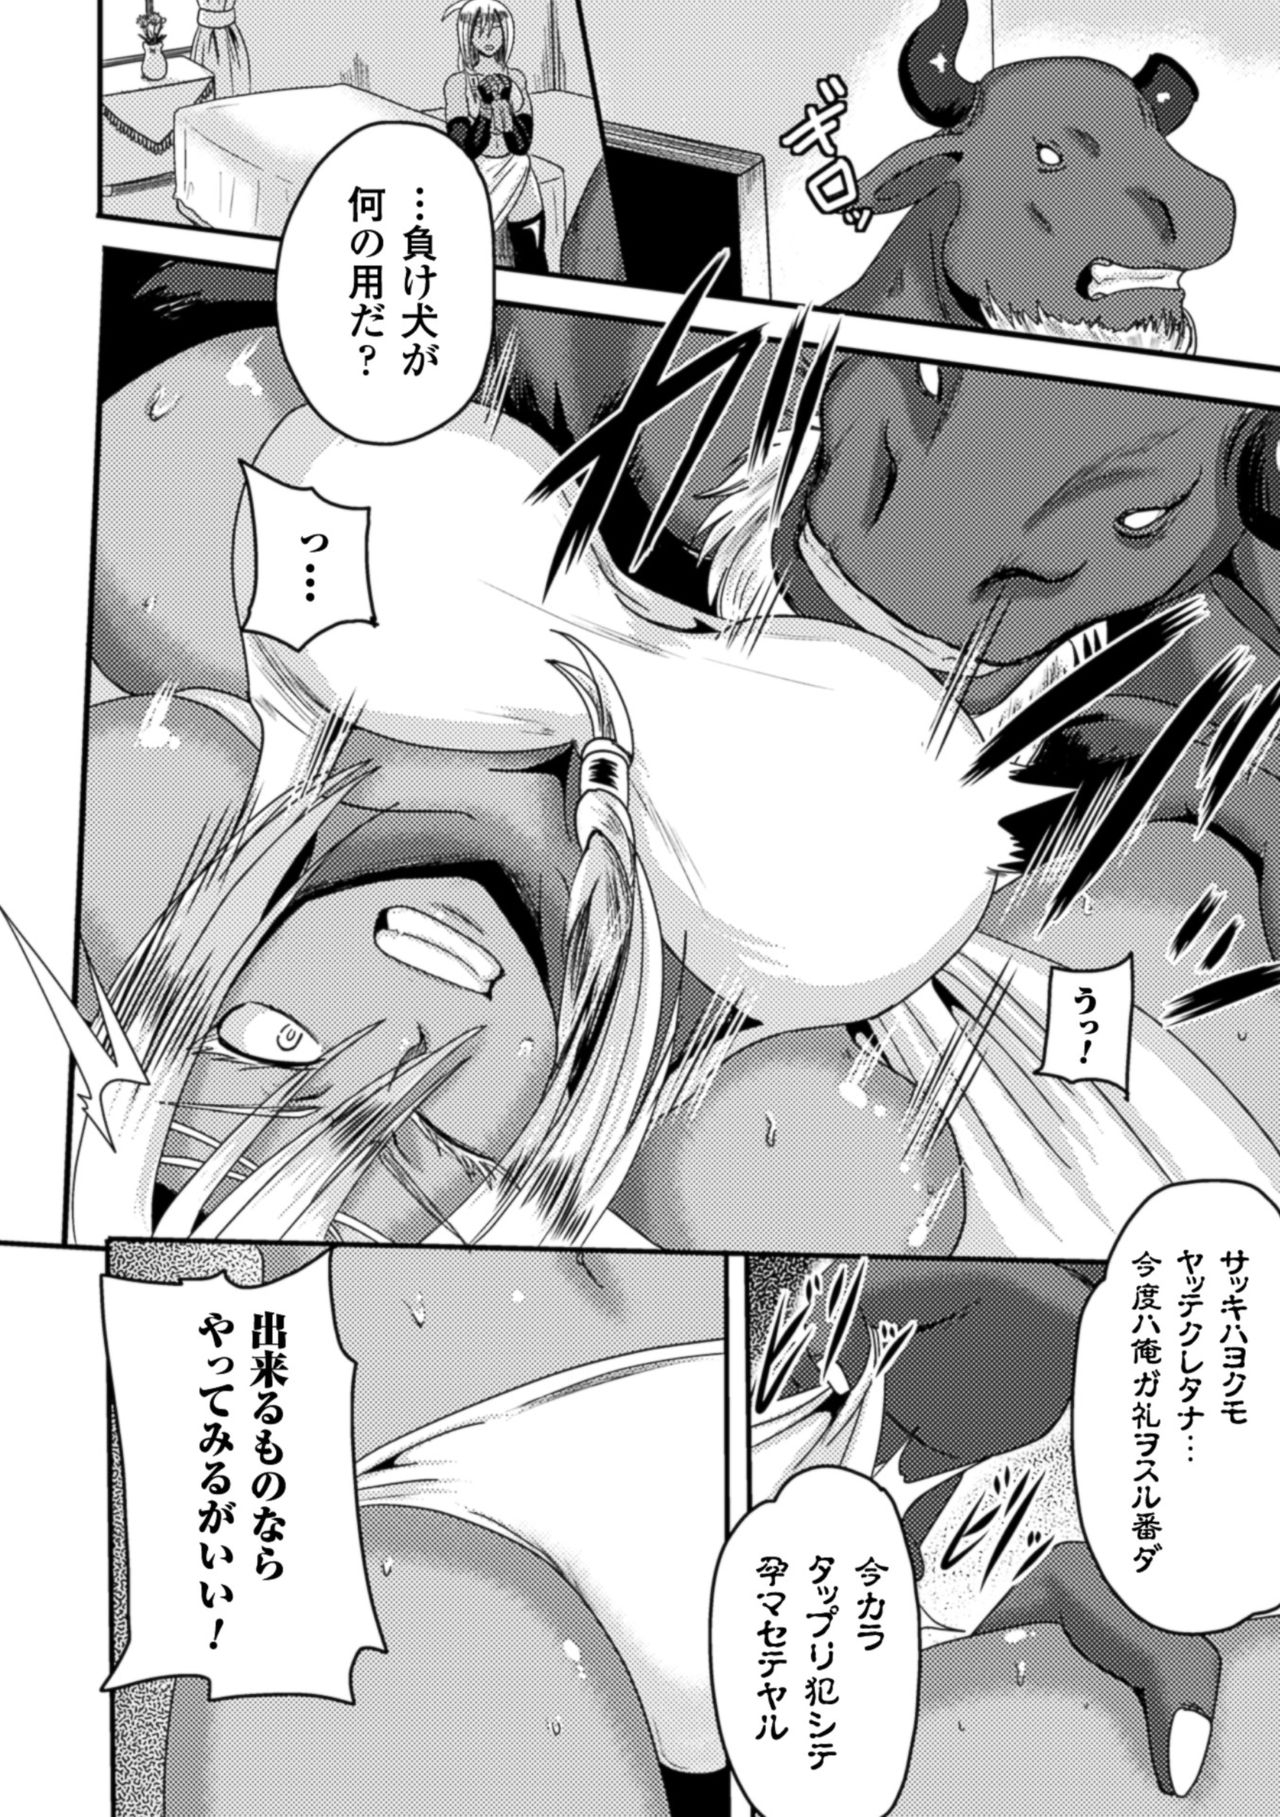 [Akuochisukii Sensei] Akuochisukii Sensei no Heroine Haiboku no Houteishiki - Equation of Heroine's defeat by Mr. Akuochisukii [Digital] 135